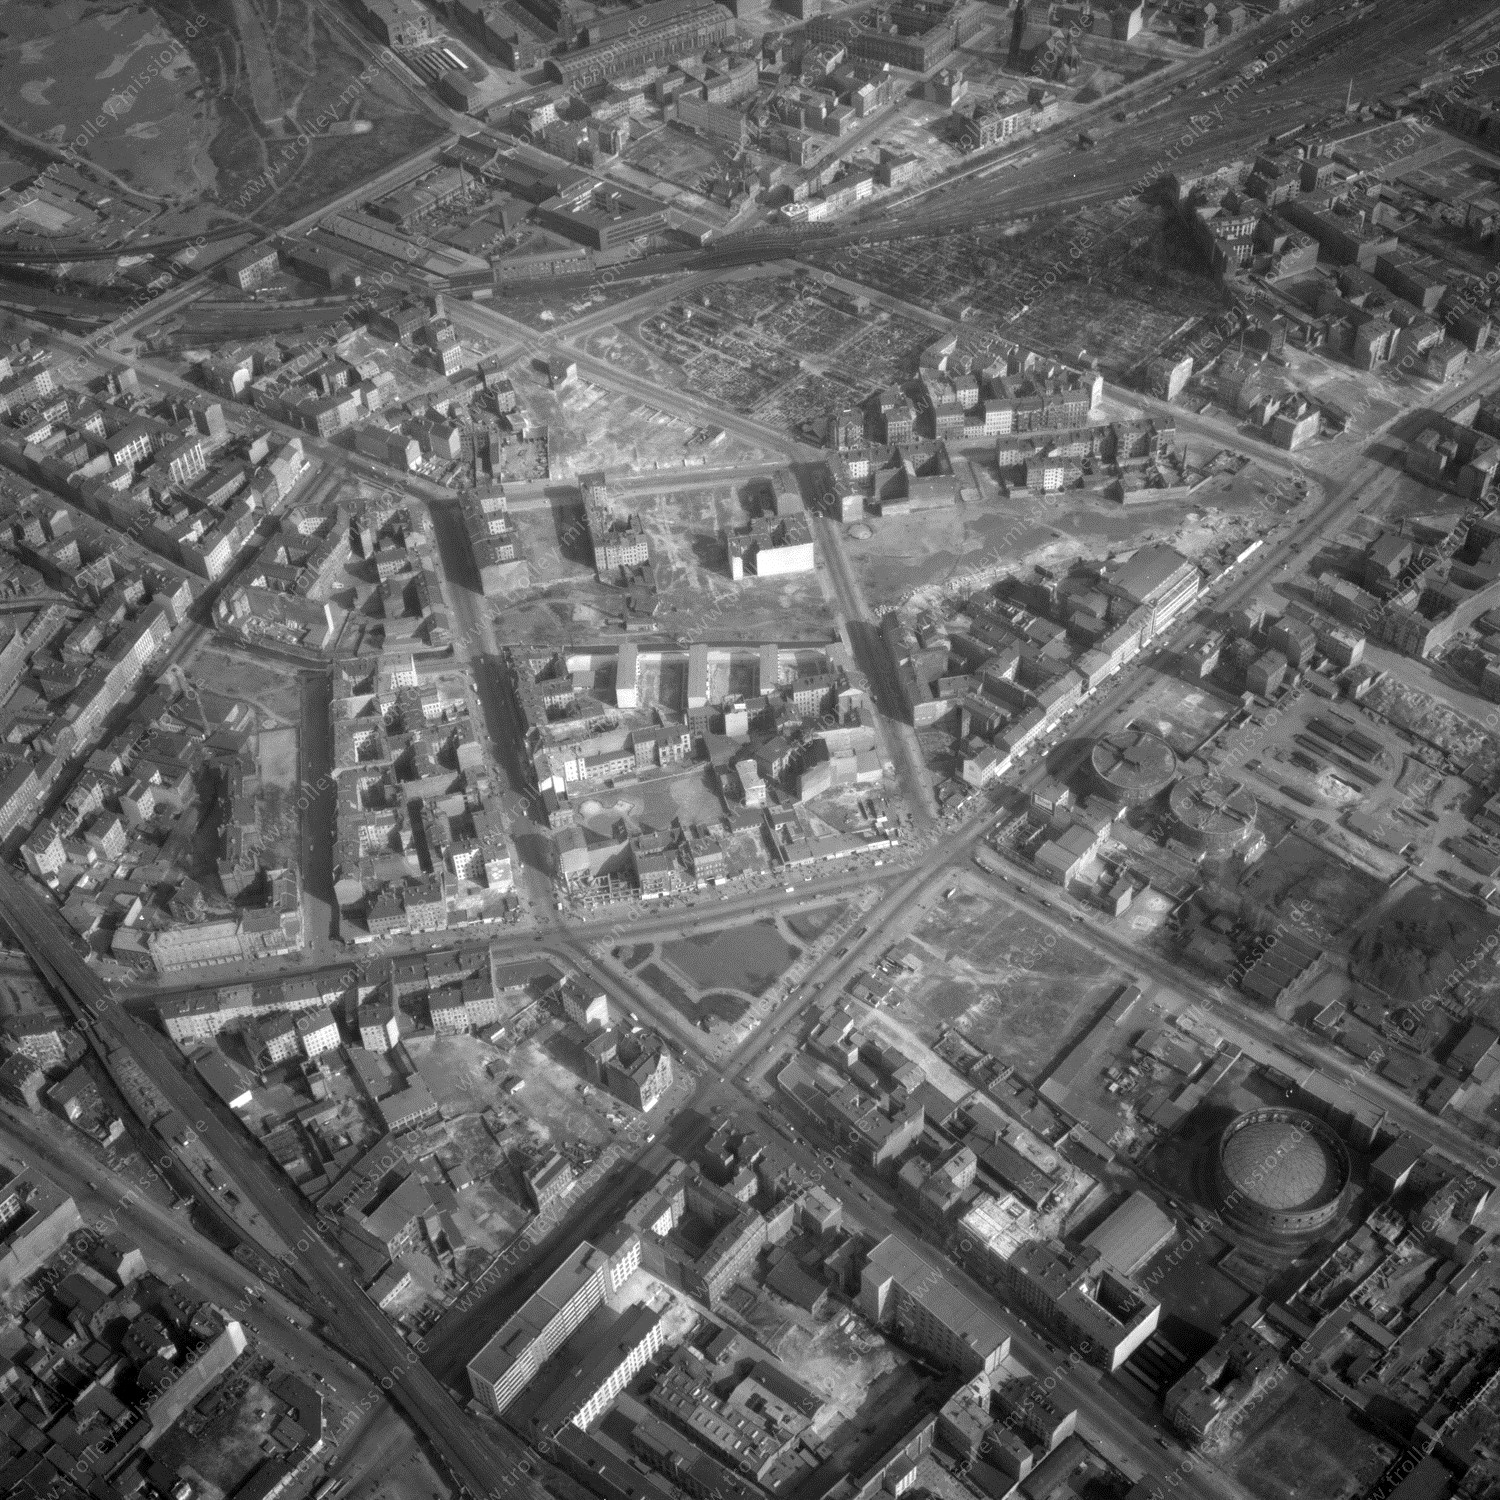 Alte Fotos und Luftbilder von Berlin - Luftbildaufnahme Nr. 03 - Historische Luftaufnahmen von West-Berlin aus dem Jahr 1954 - Flugstrecke Quebec